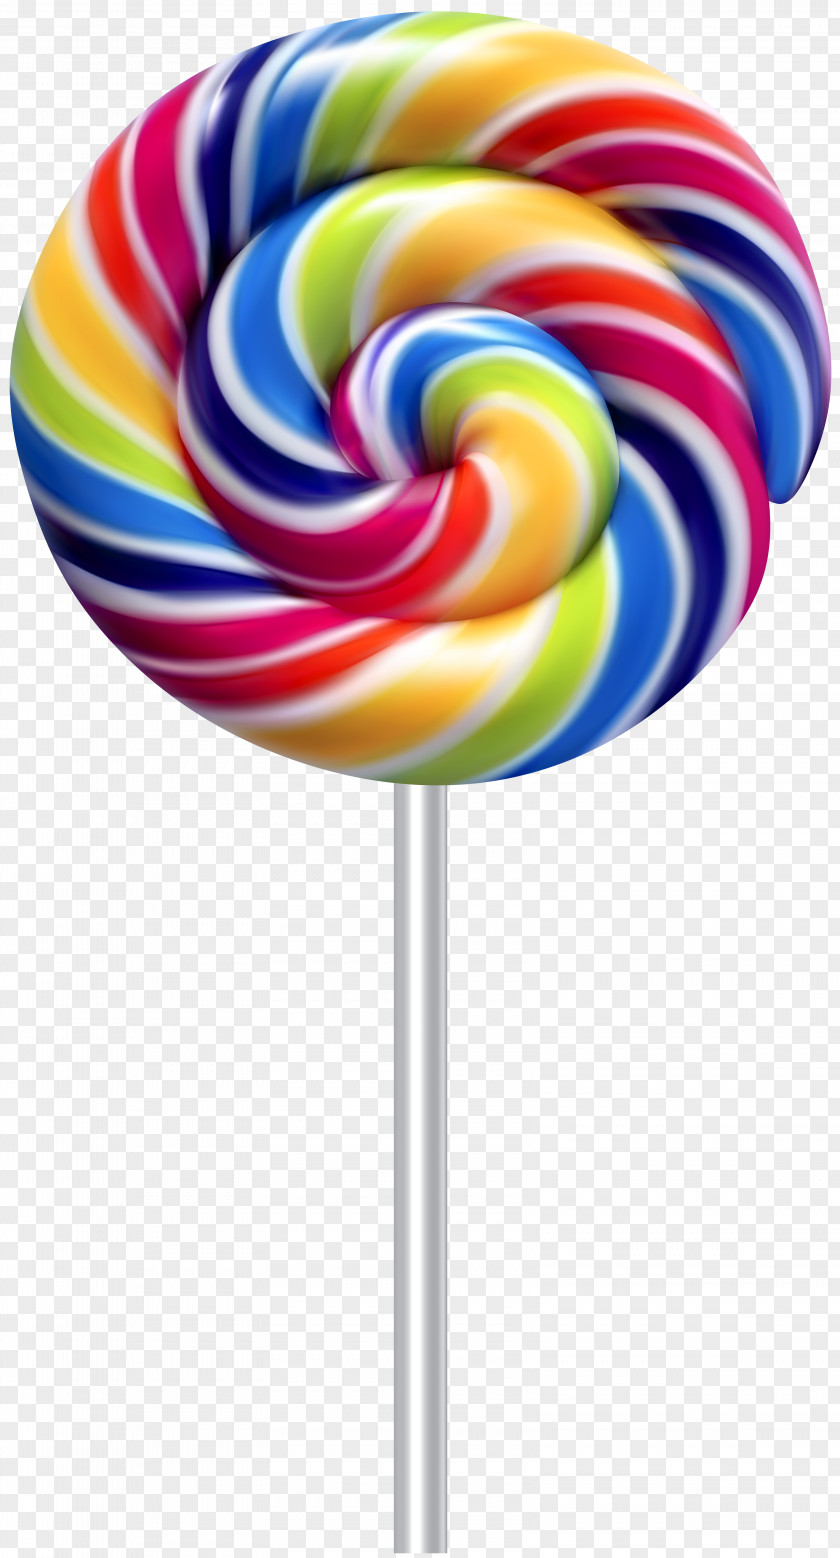 Cartoon Lollipop Candy Cane Stick PNG